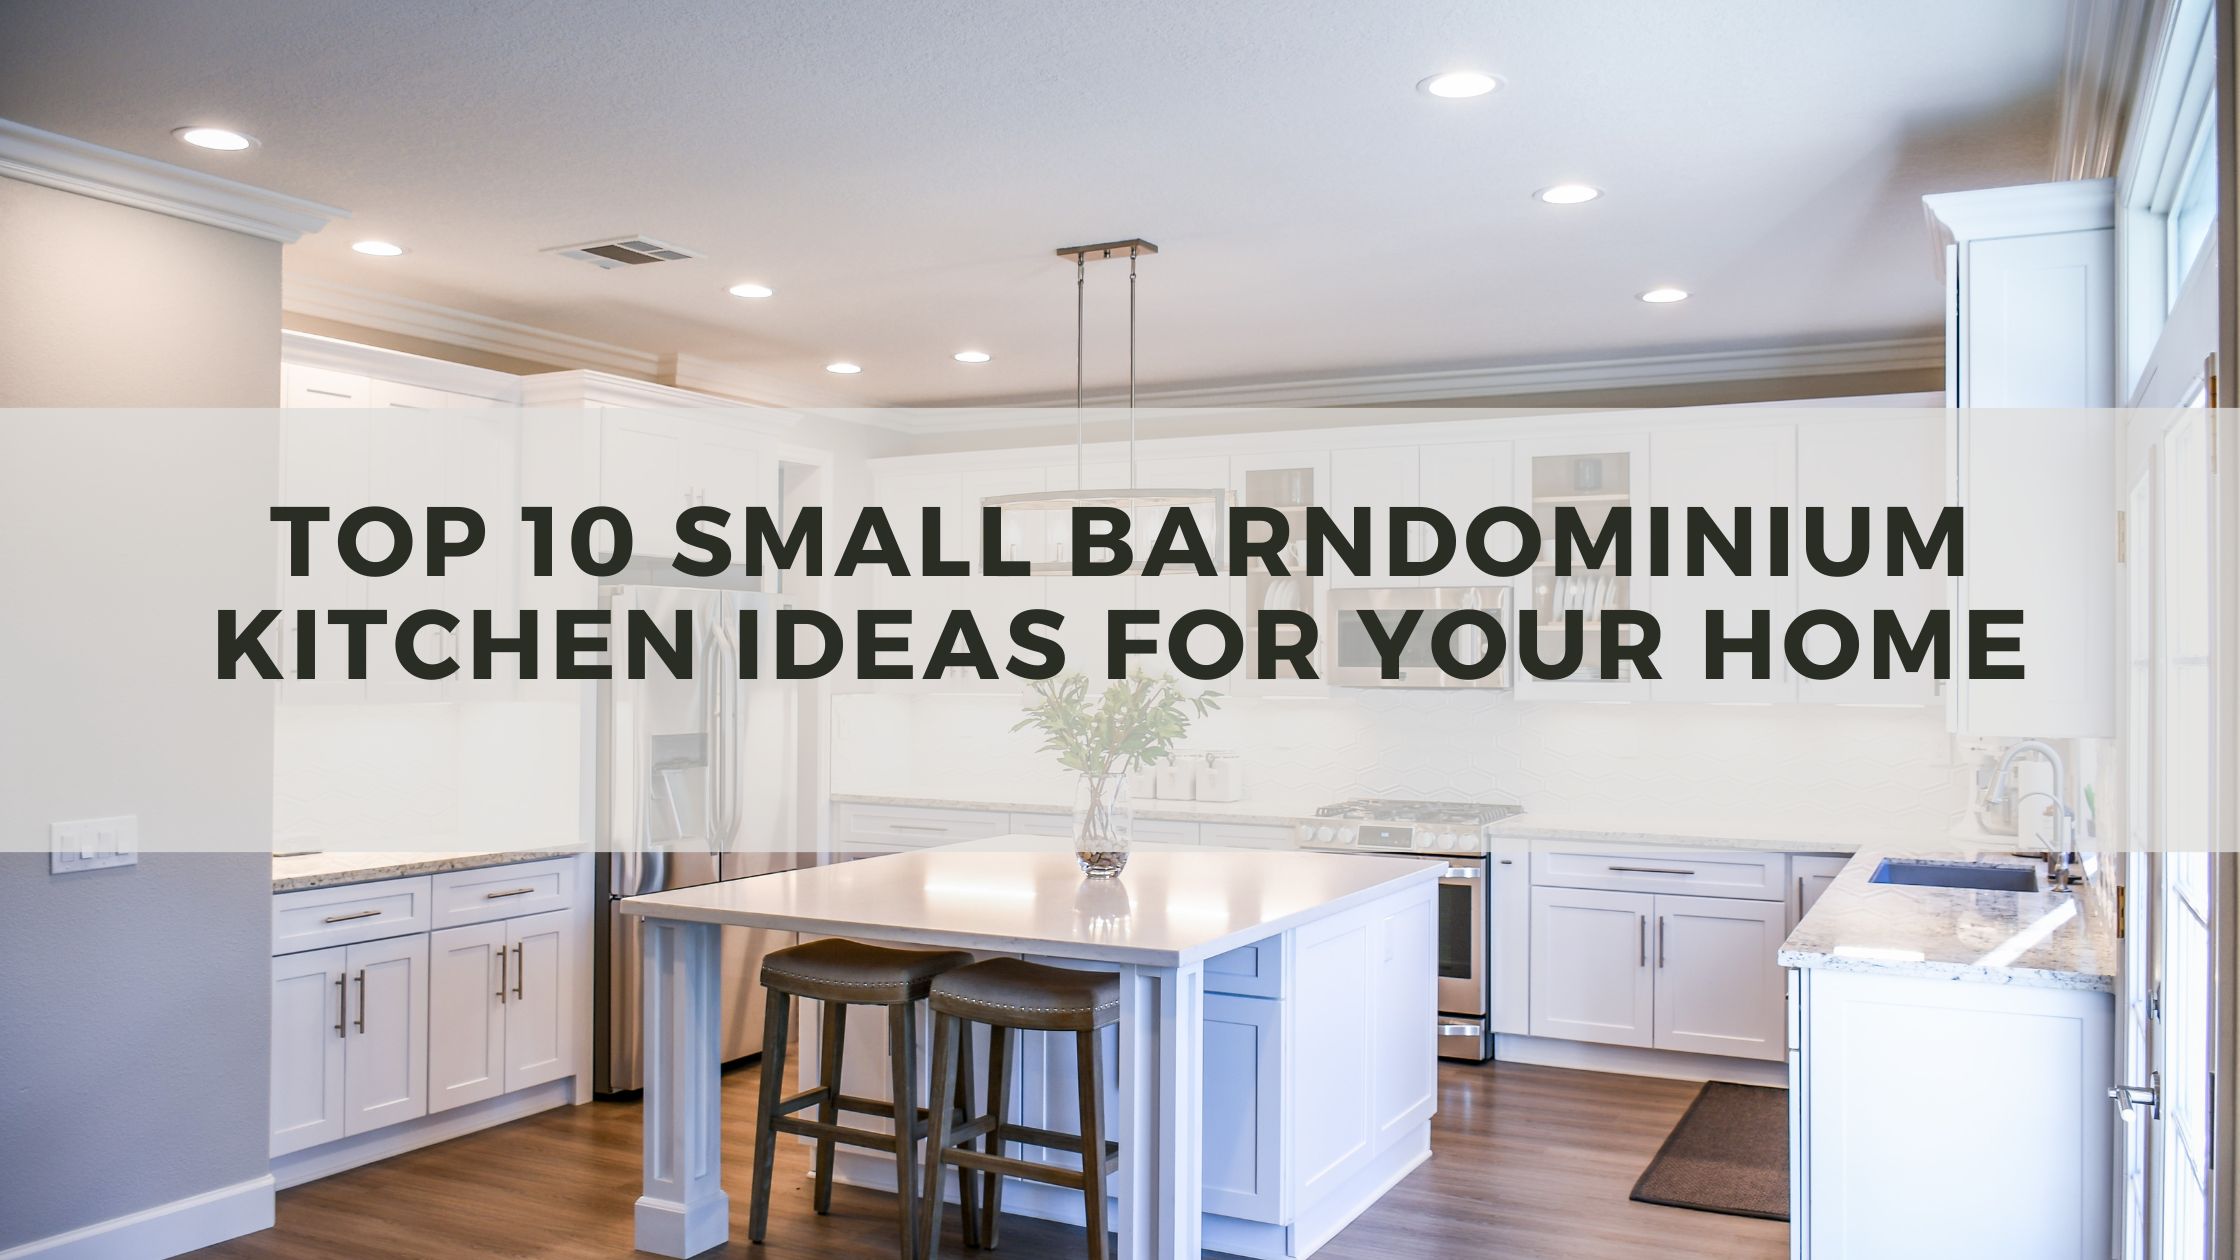 Small Barndominium Kitchen Ideas